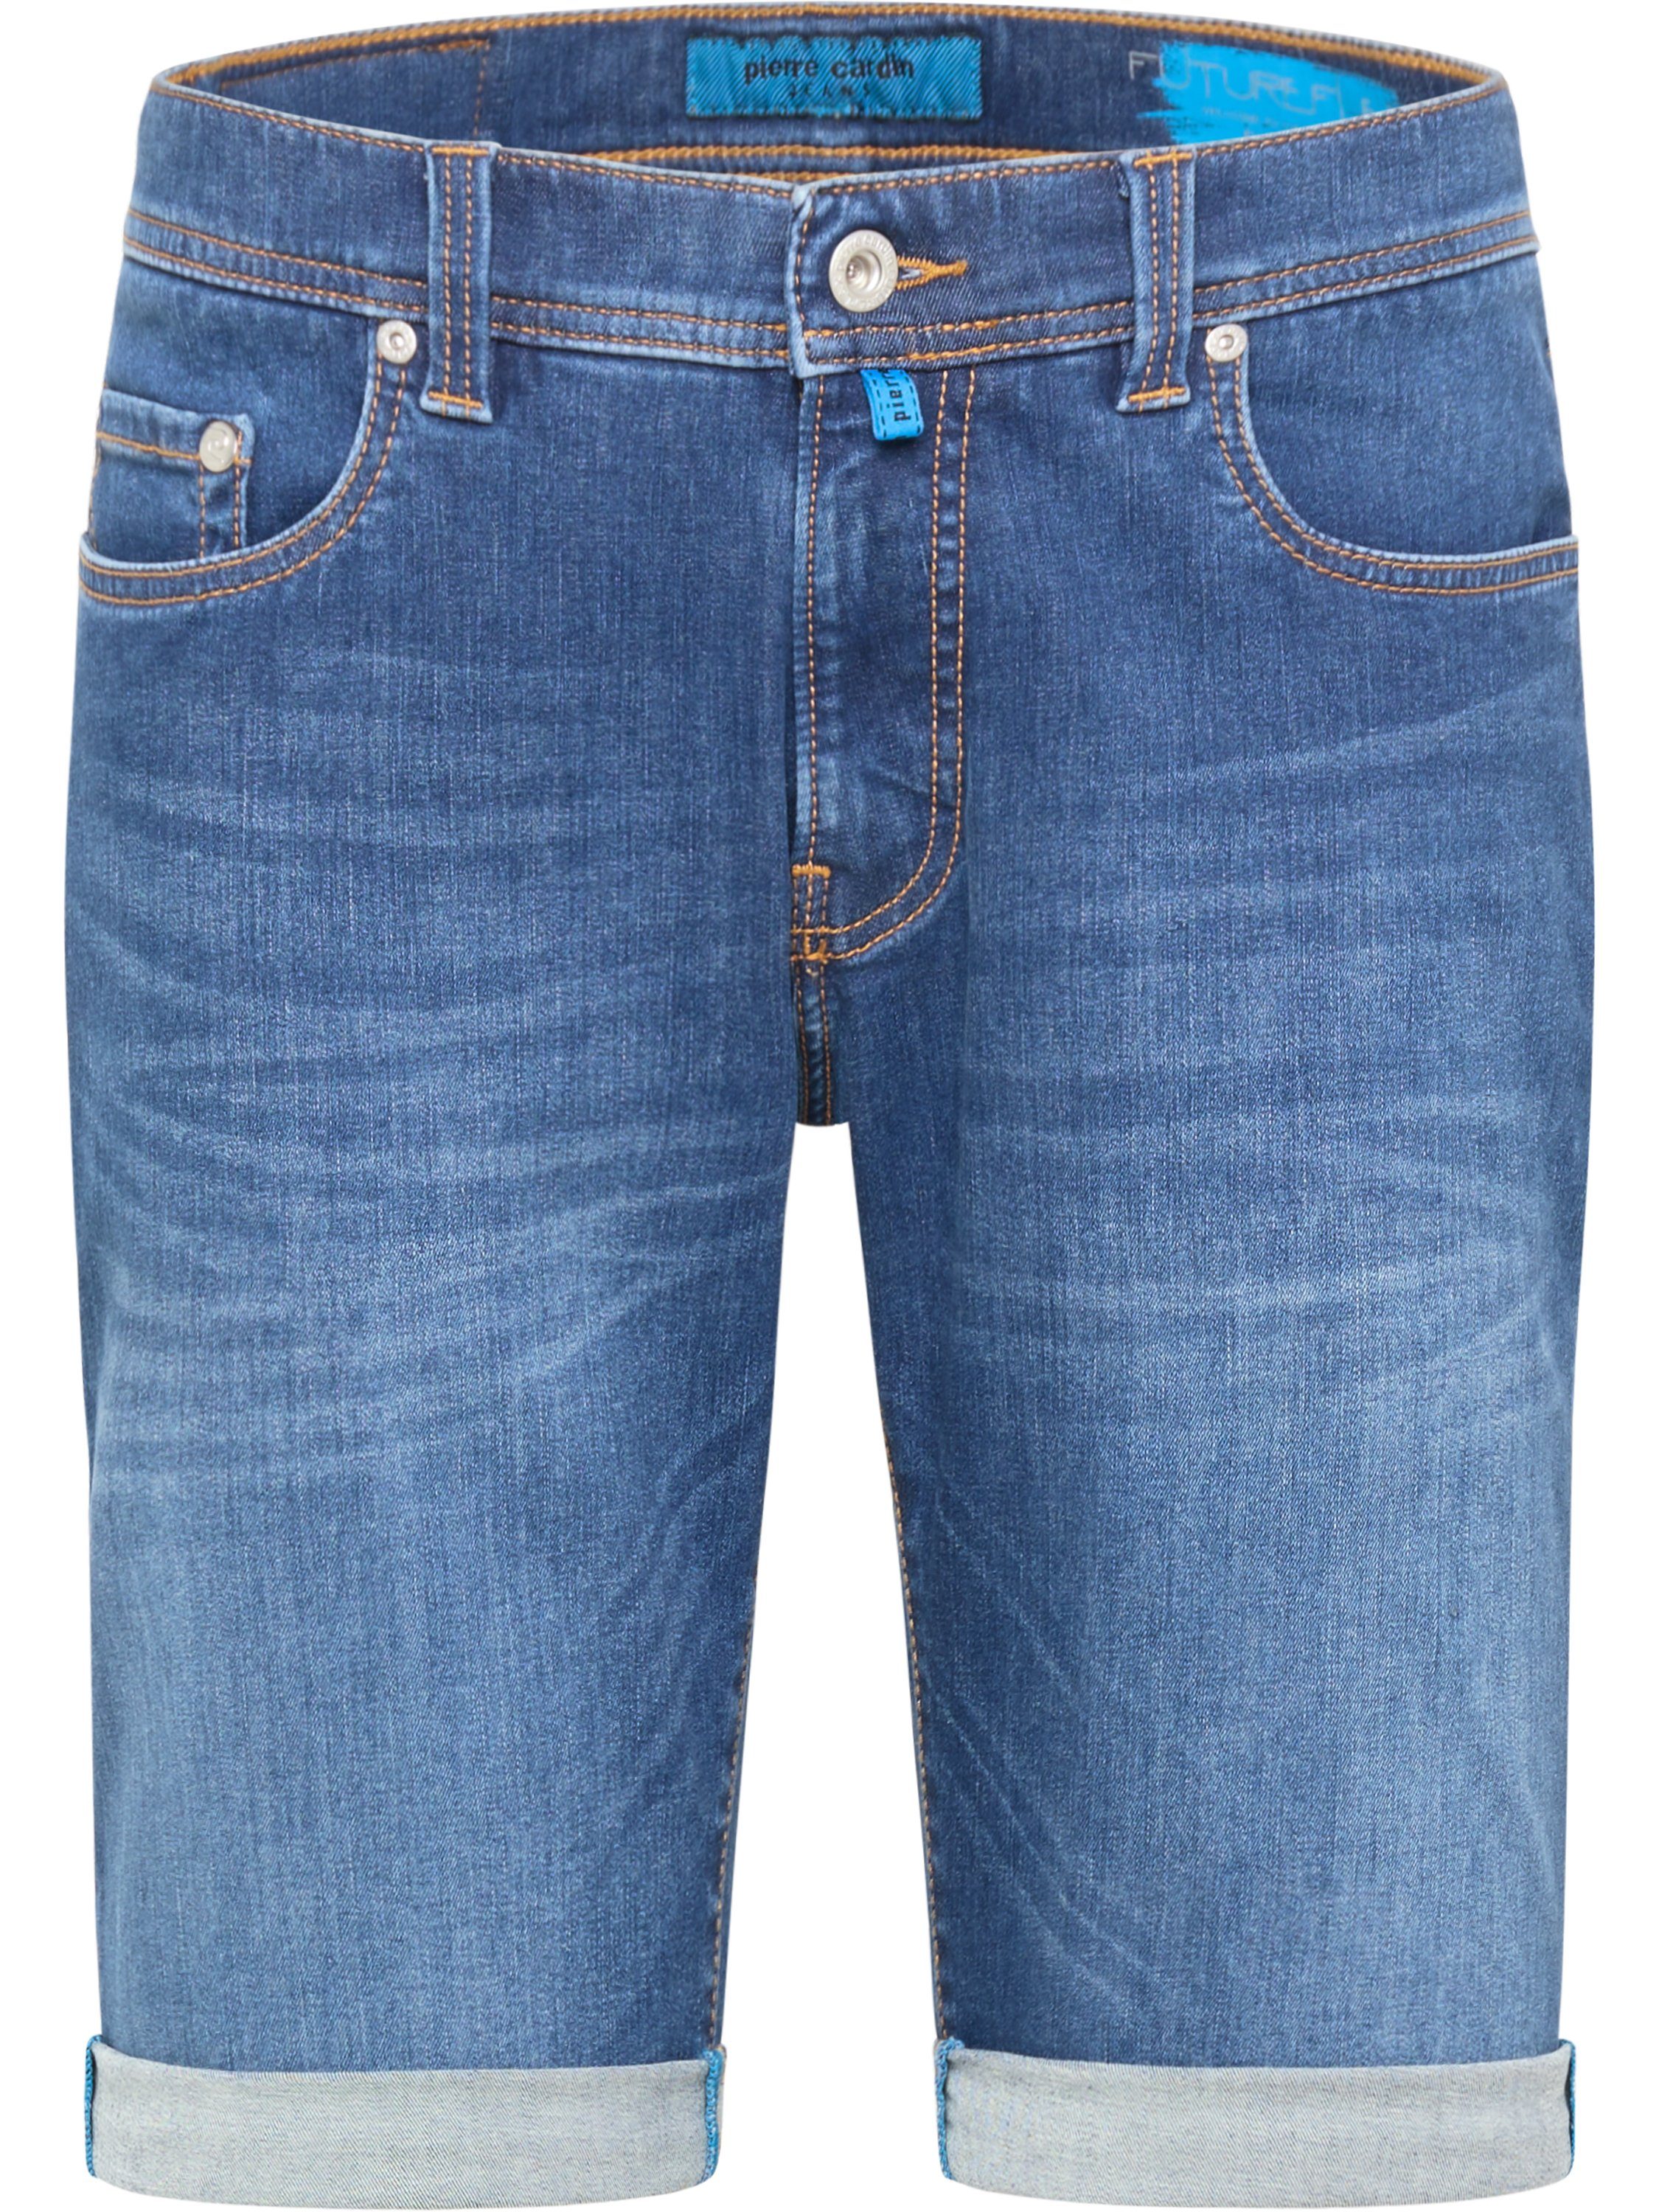 Pierre Cardin 5-Pocket-Jeans PIERRE LYON 3452 SHORTS Inch-Gr FUTUREFLEX blue CARDIN denim 8860.05 